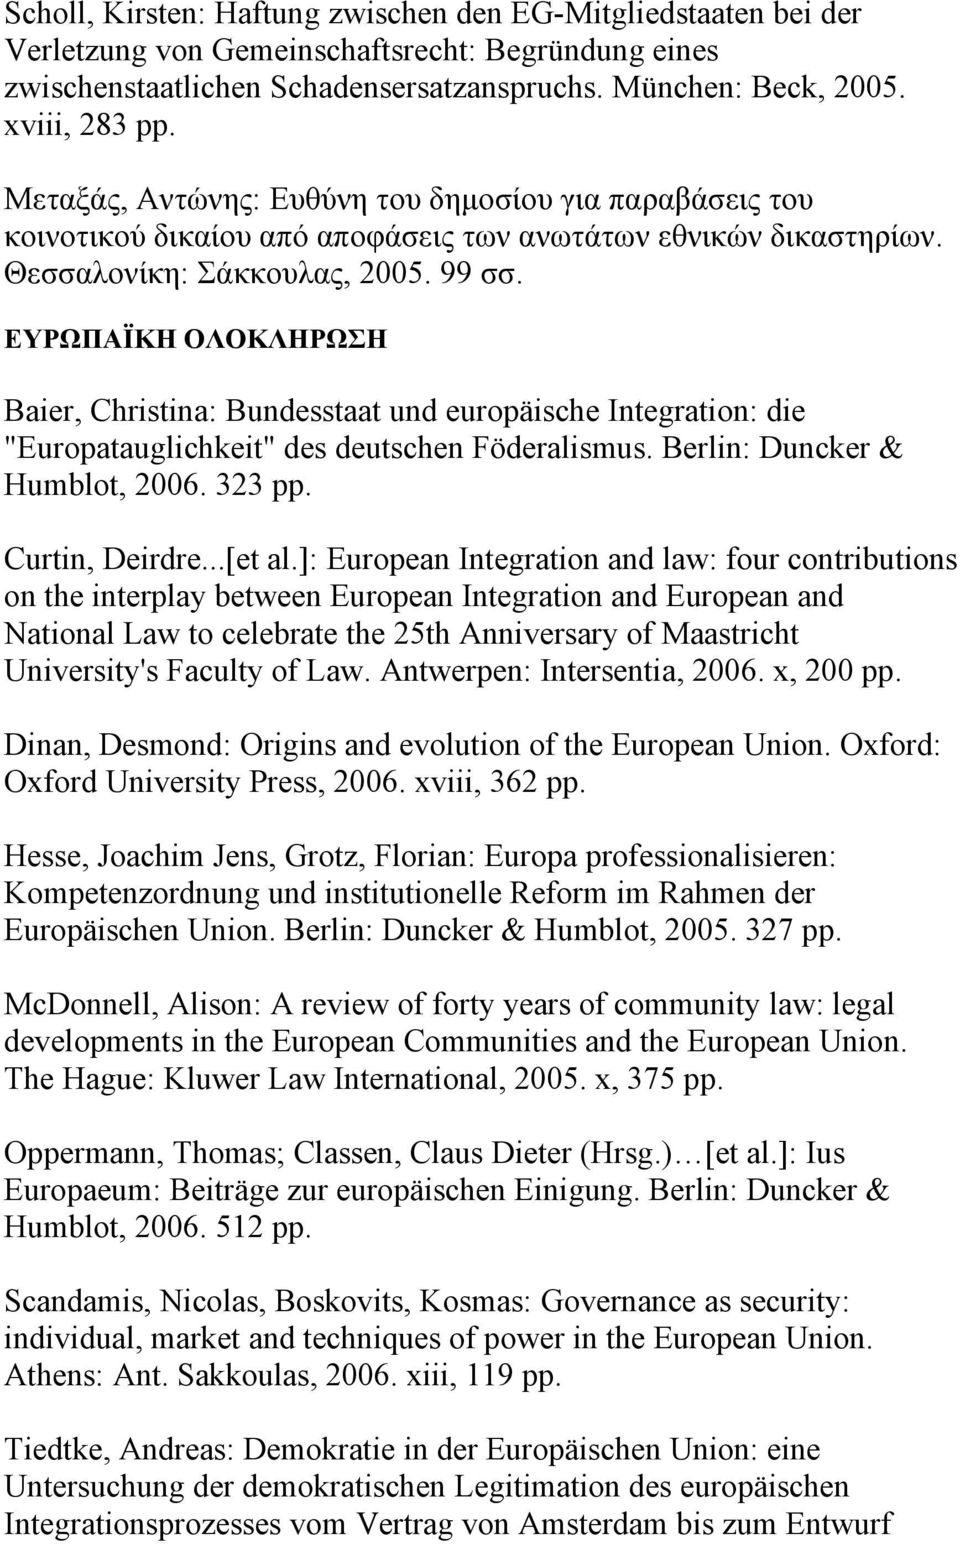 ΕΥΡΩΠΑΪΚΗ ΟΛΟΚΛΗΡΩΣΗ Baier, Christina: Bundesstaat und europäische Integration: die "Europatauglichkeit" des deutschen Föderalismus. Berlin: Duncker & Humblot, 2006. 323 pp. Curtin, Deirdre...[et al.